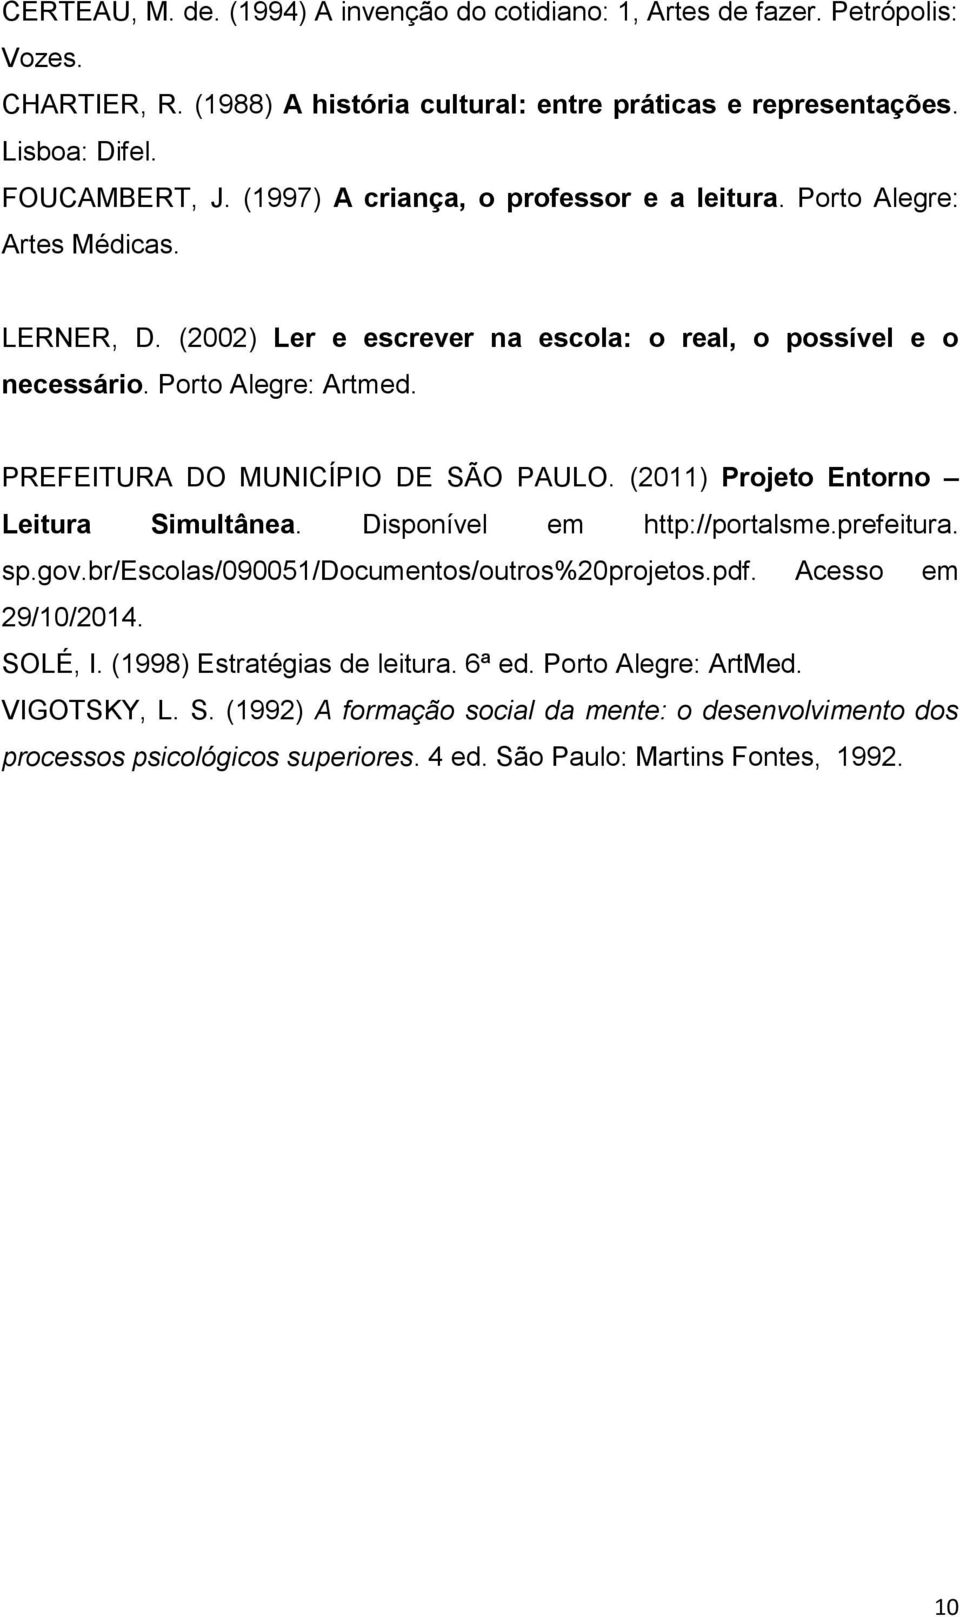 PREFEITURA DO MUNICÍPIO DE SÃO PAULO. (2011) Projeto Entorno Leitura Simultânea. Disponível em http://portalsme.prefeitura. sp.gov.br/escolas/090051/documentos/outros%20projetos.pdf.